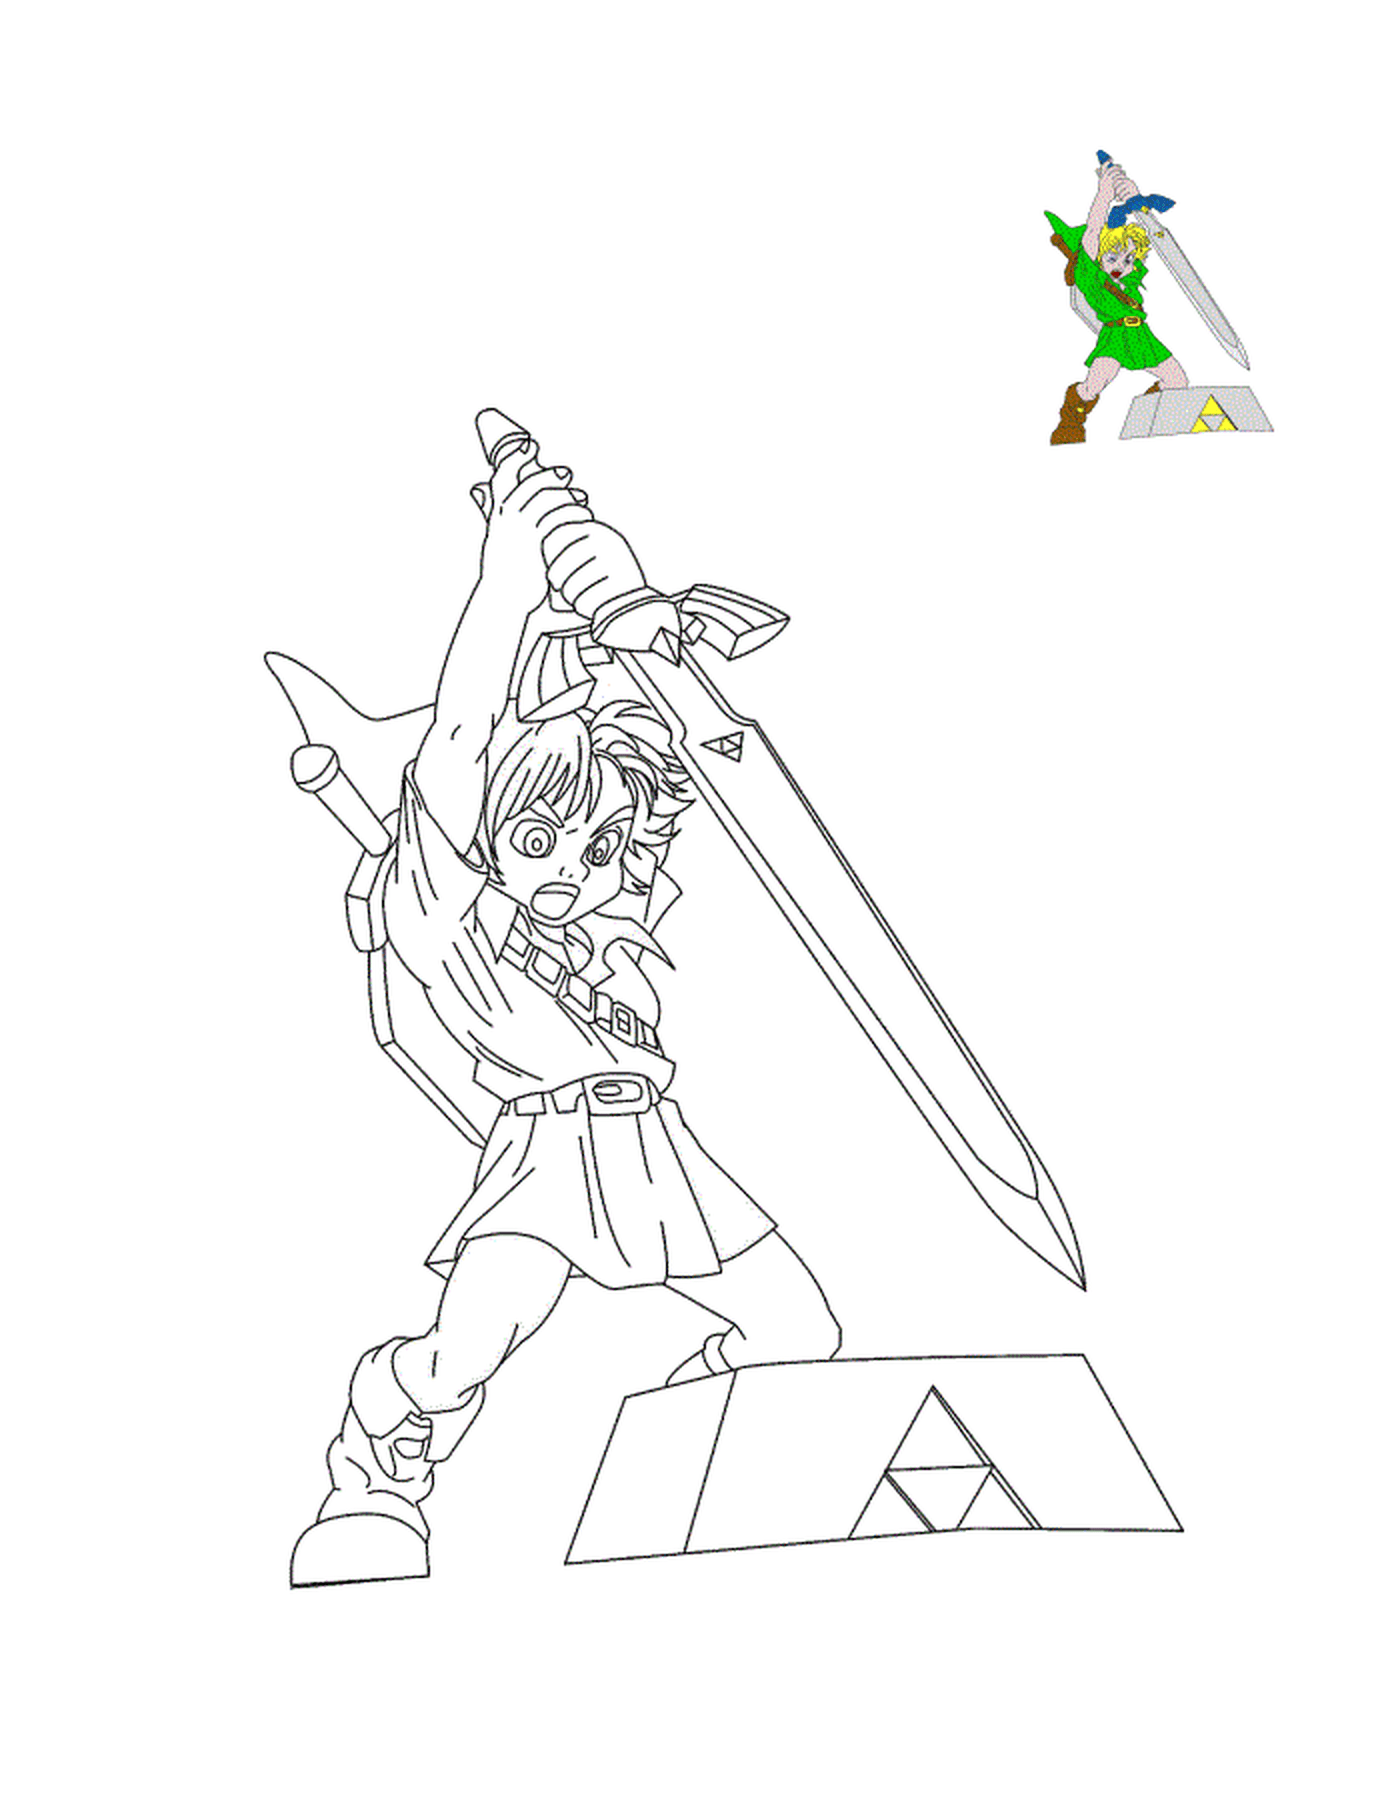   La légendaire épée de Zelda 